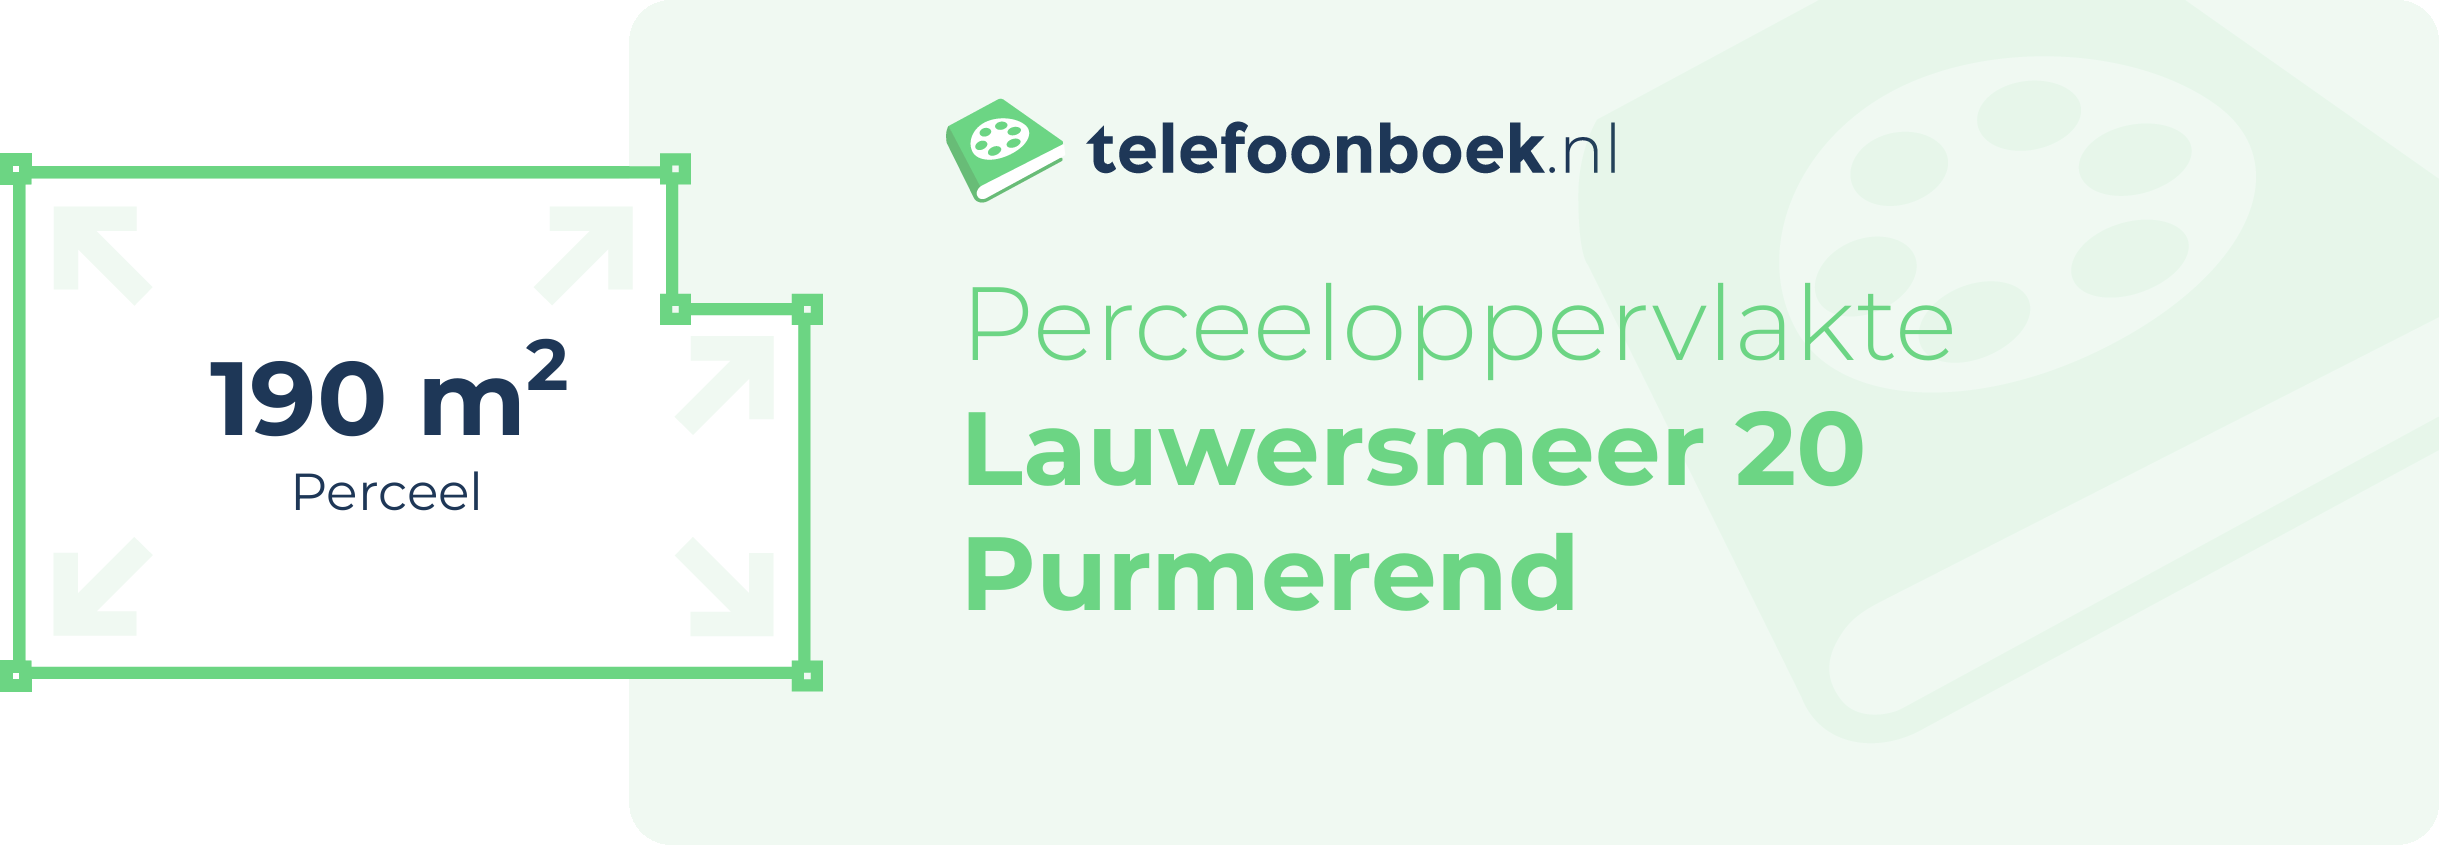 Perceeloppervlakte Lauwersmeer 20 Purmerend